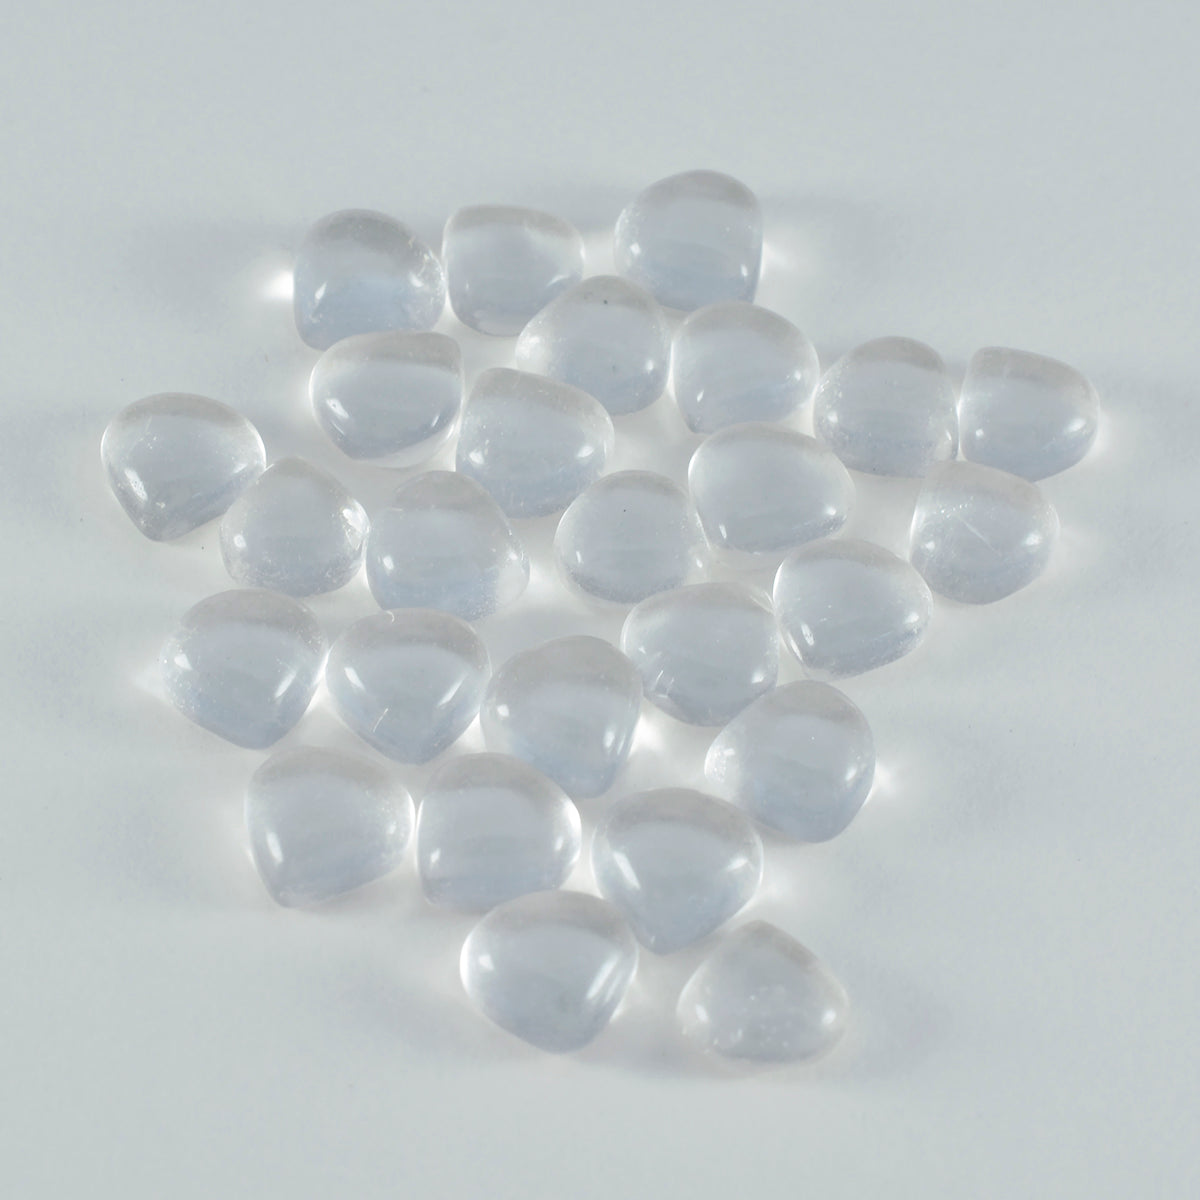 Riyogems 1 Stück weißer Kristallquarz-Cabochon, 5 x 5 mm, Herzform, Stein von hervorragender Qualität